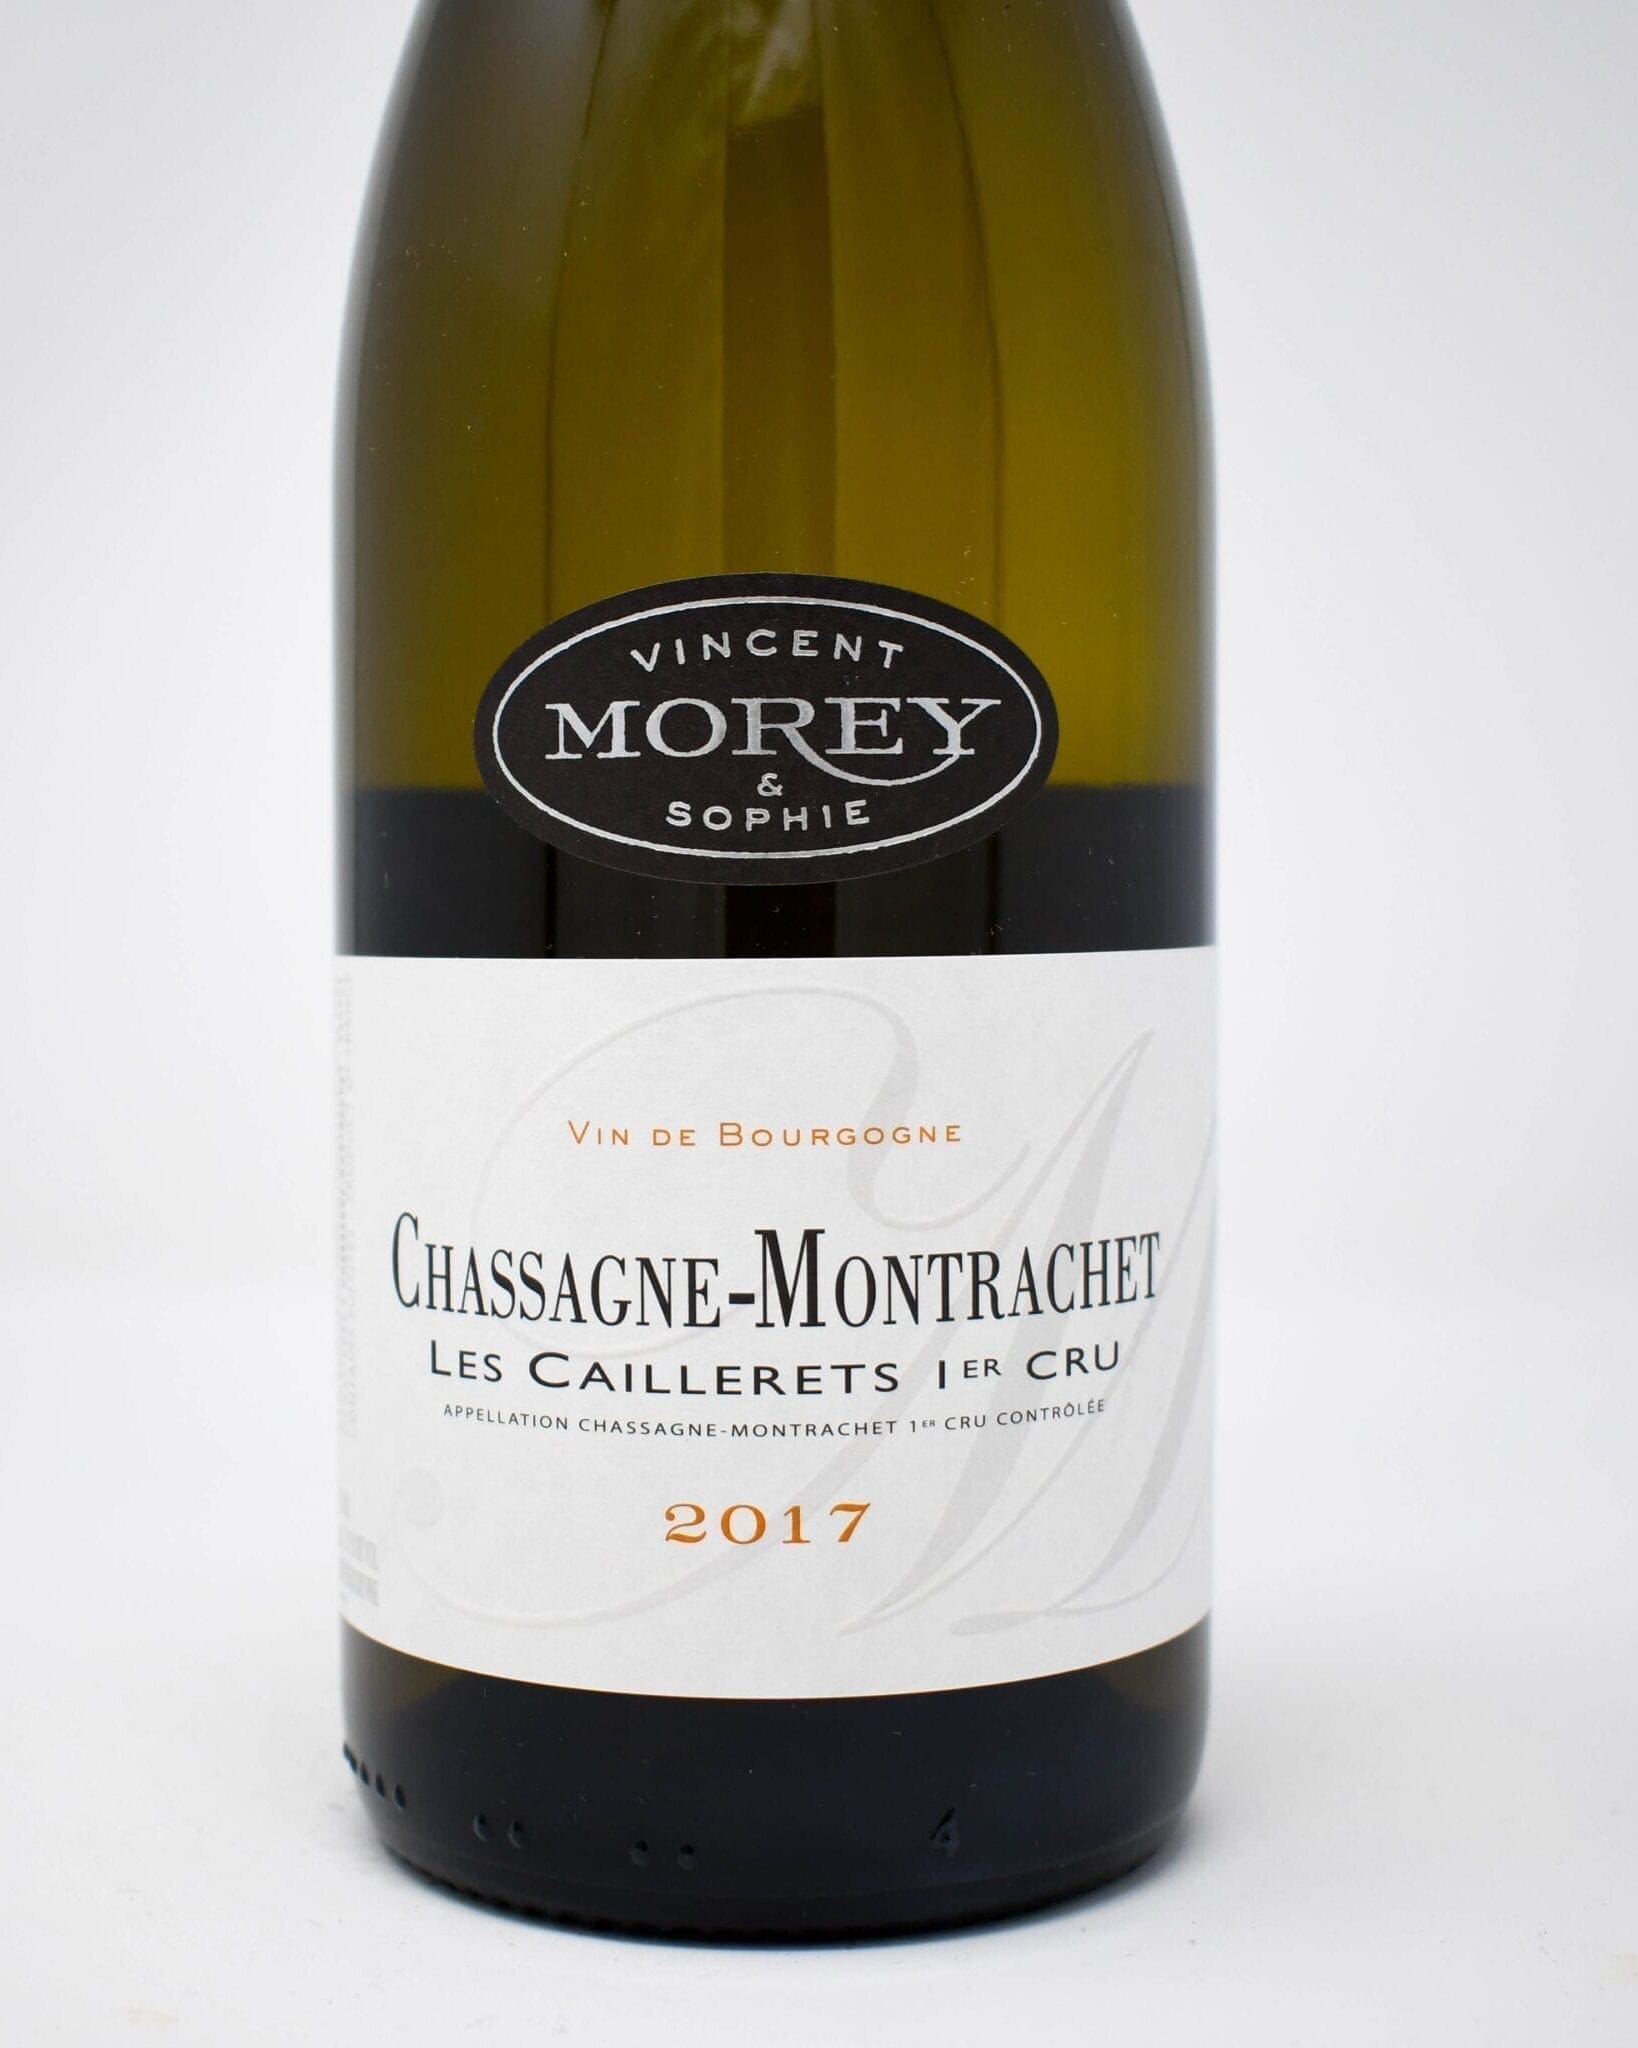 Vincent & Sophie Morey, Chassagne-Montrachet, Les Caillerets, Premier Cru, White Burgundy